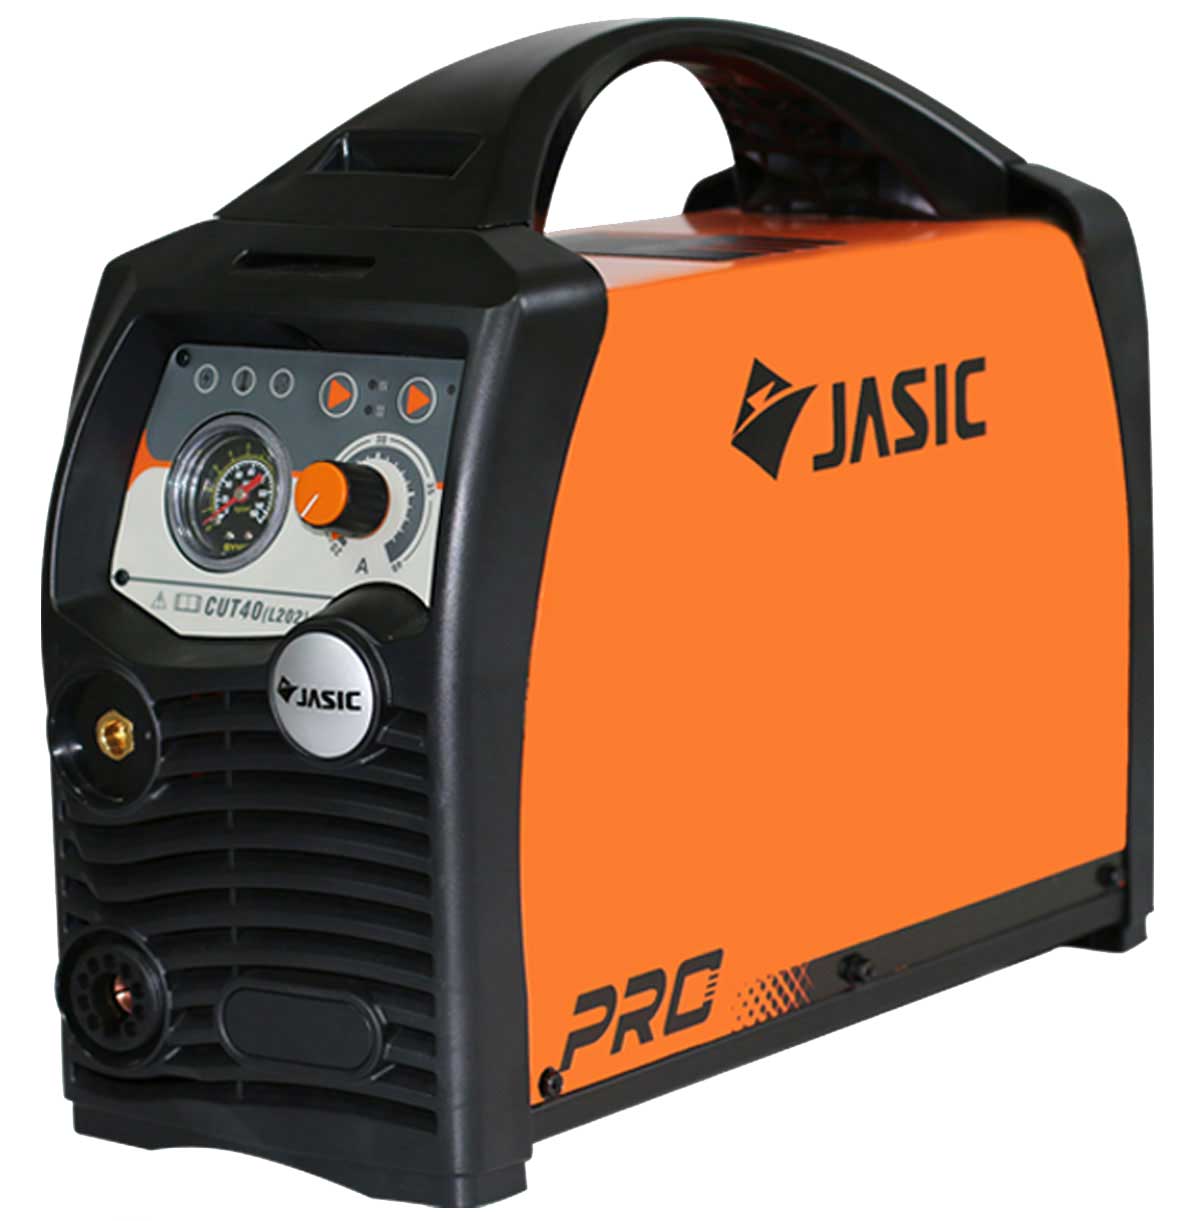 JASIC CUT 40 (L202) plazmavágó gép euró csatlakozóval